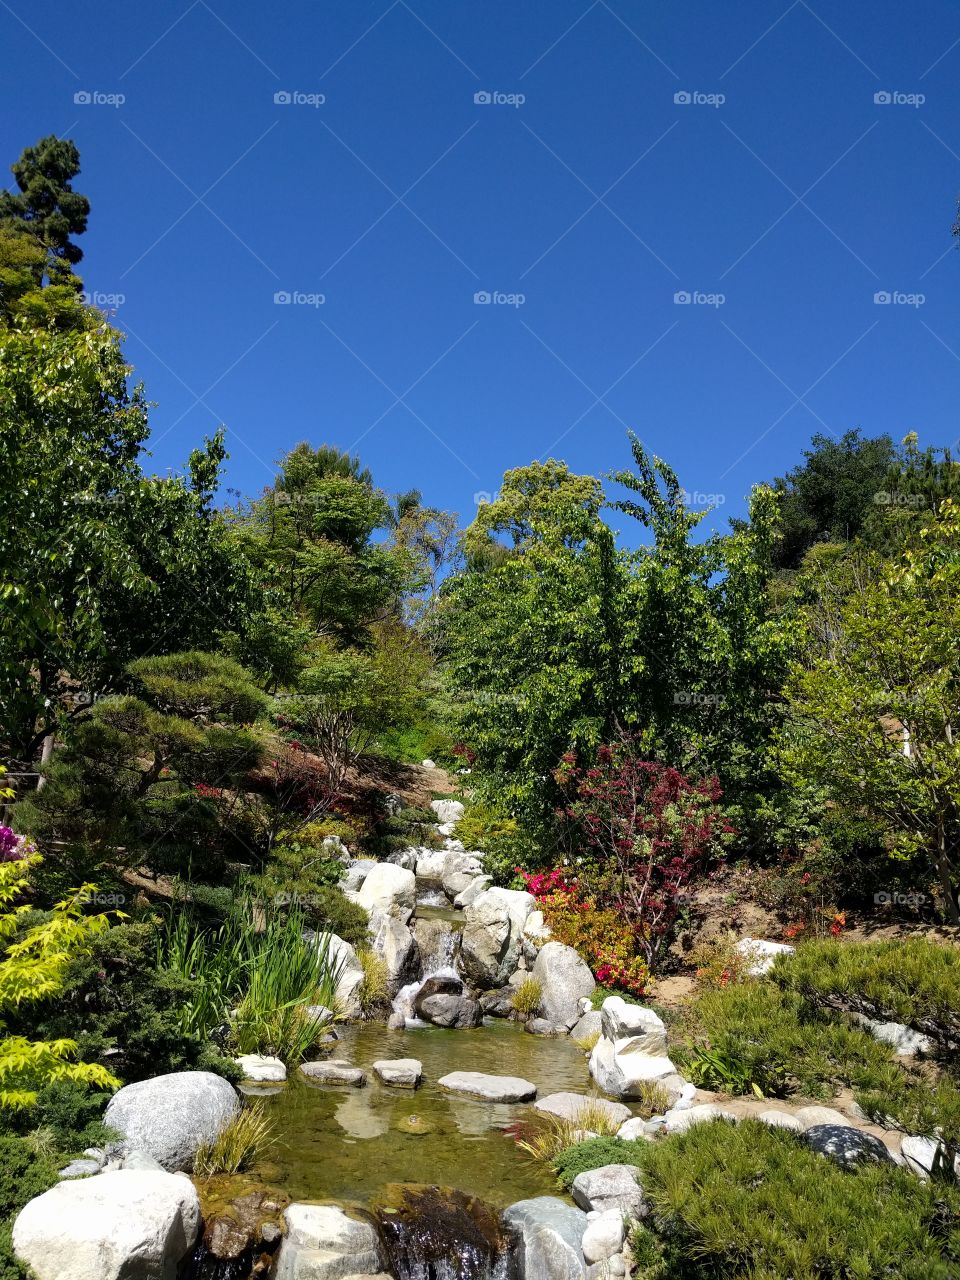 Japanese Garden view